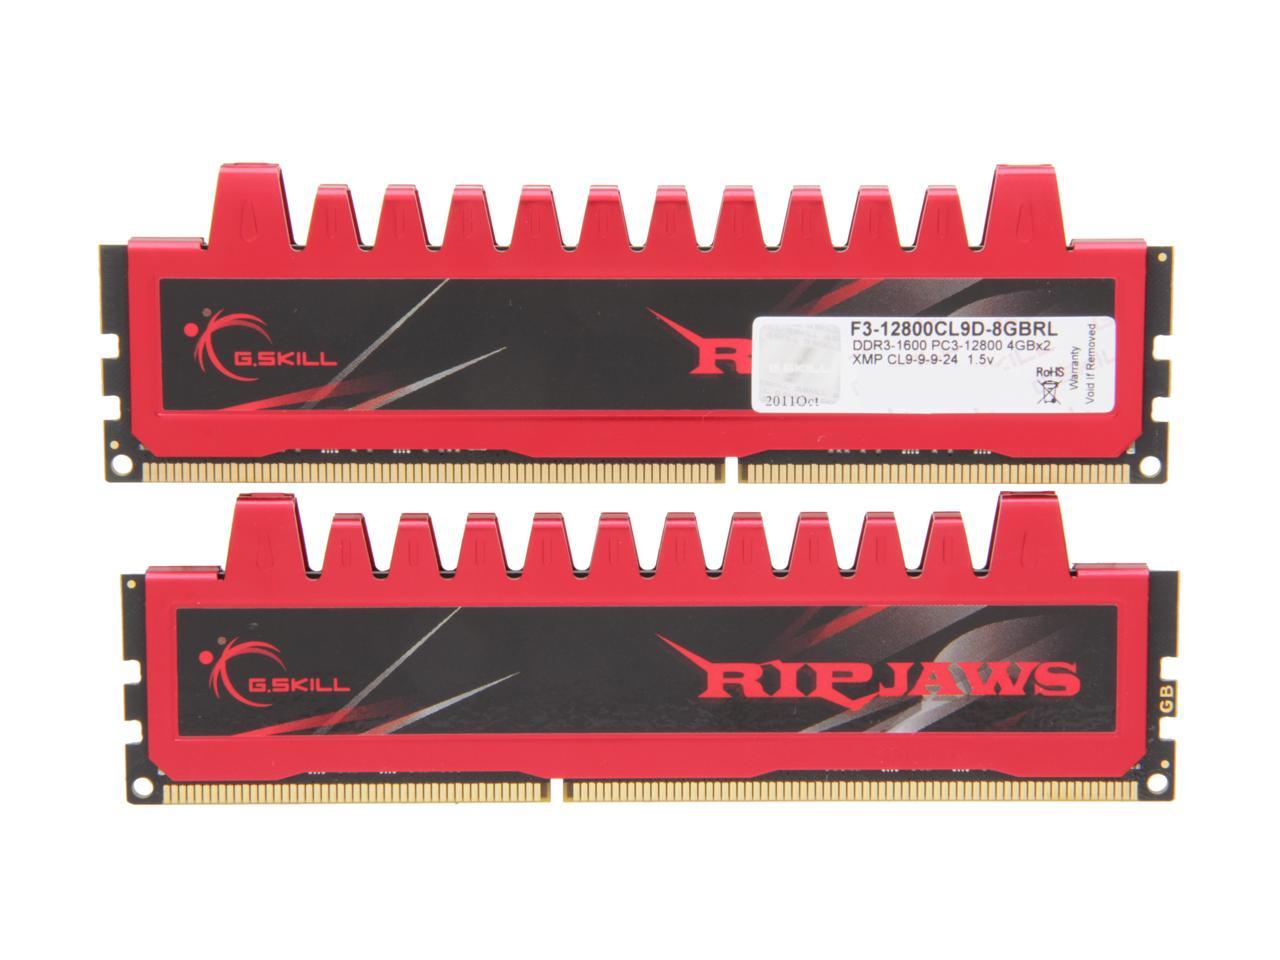 G.SKILL Ripjaws Series 8GB (2 x 4GB) 240-Pin DDR3 SDRAM DDR3 1600 (PC3 12800) Desktop Memory Model F3-12800CL9D-8GBRL